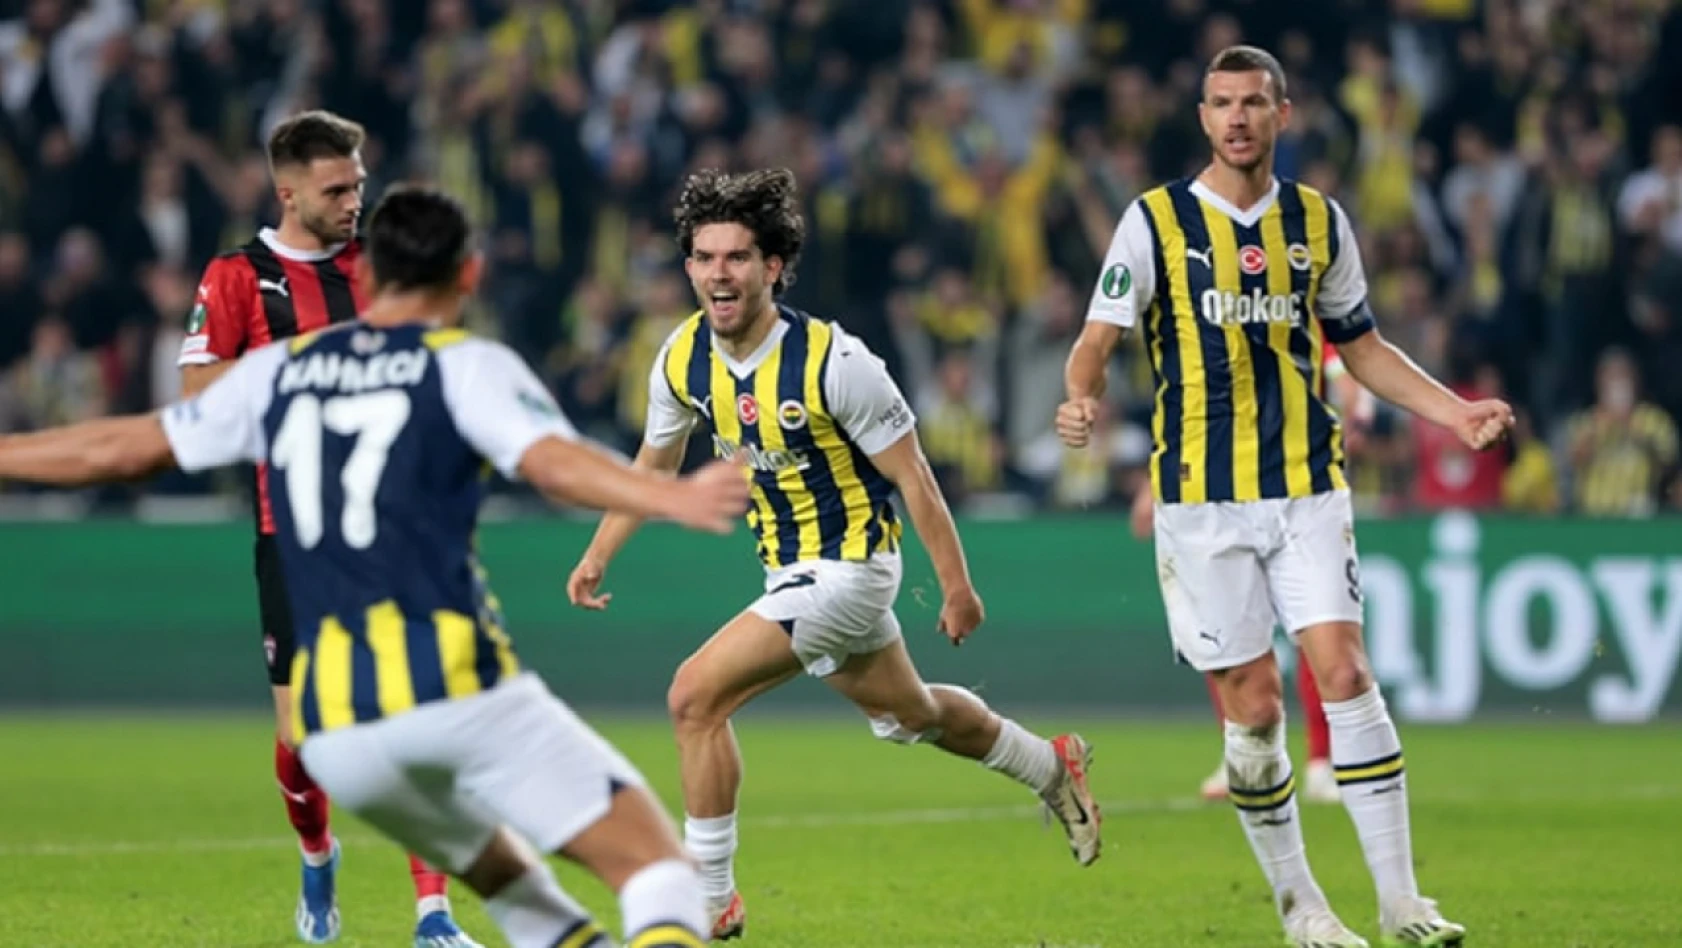 Fenerbahçe, Spartak Trnava'yı farklı mağlup ederek grubunu lider tamamladı